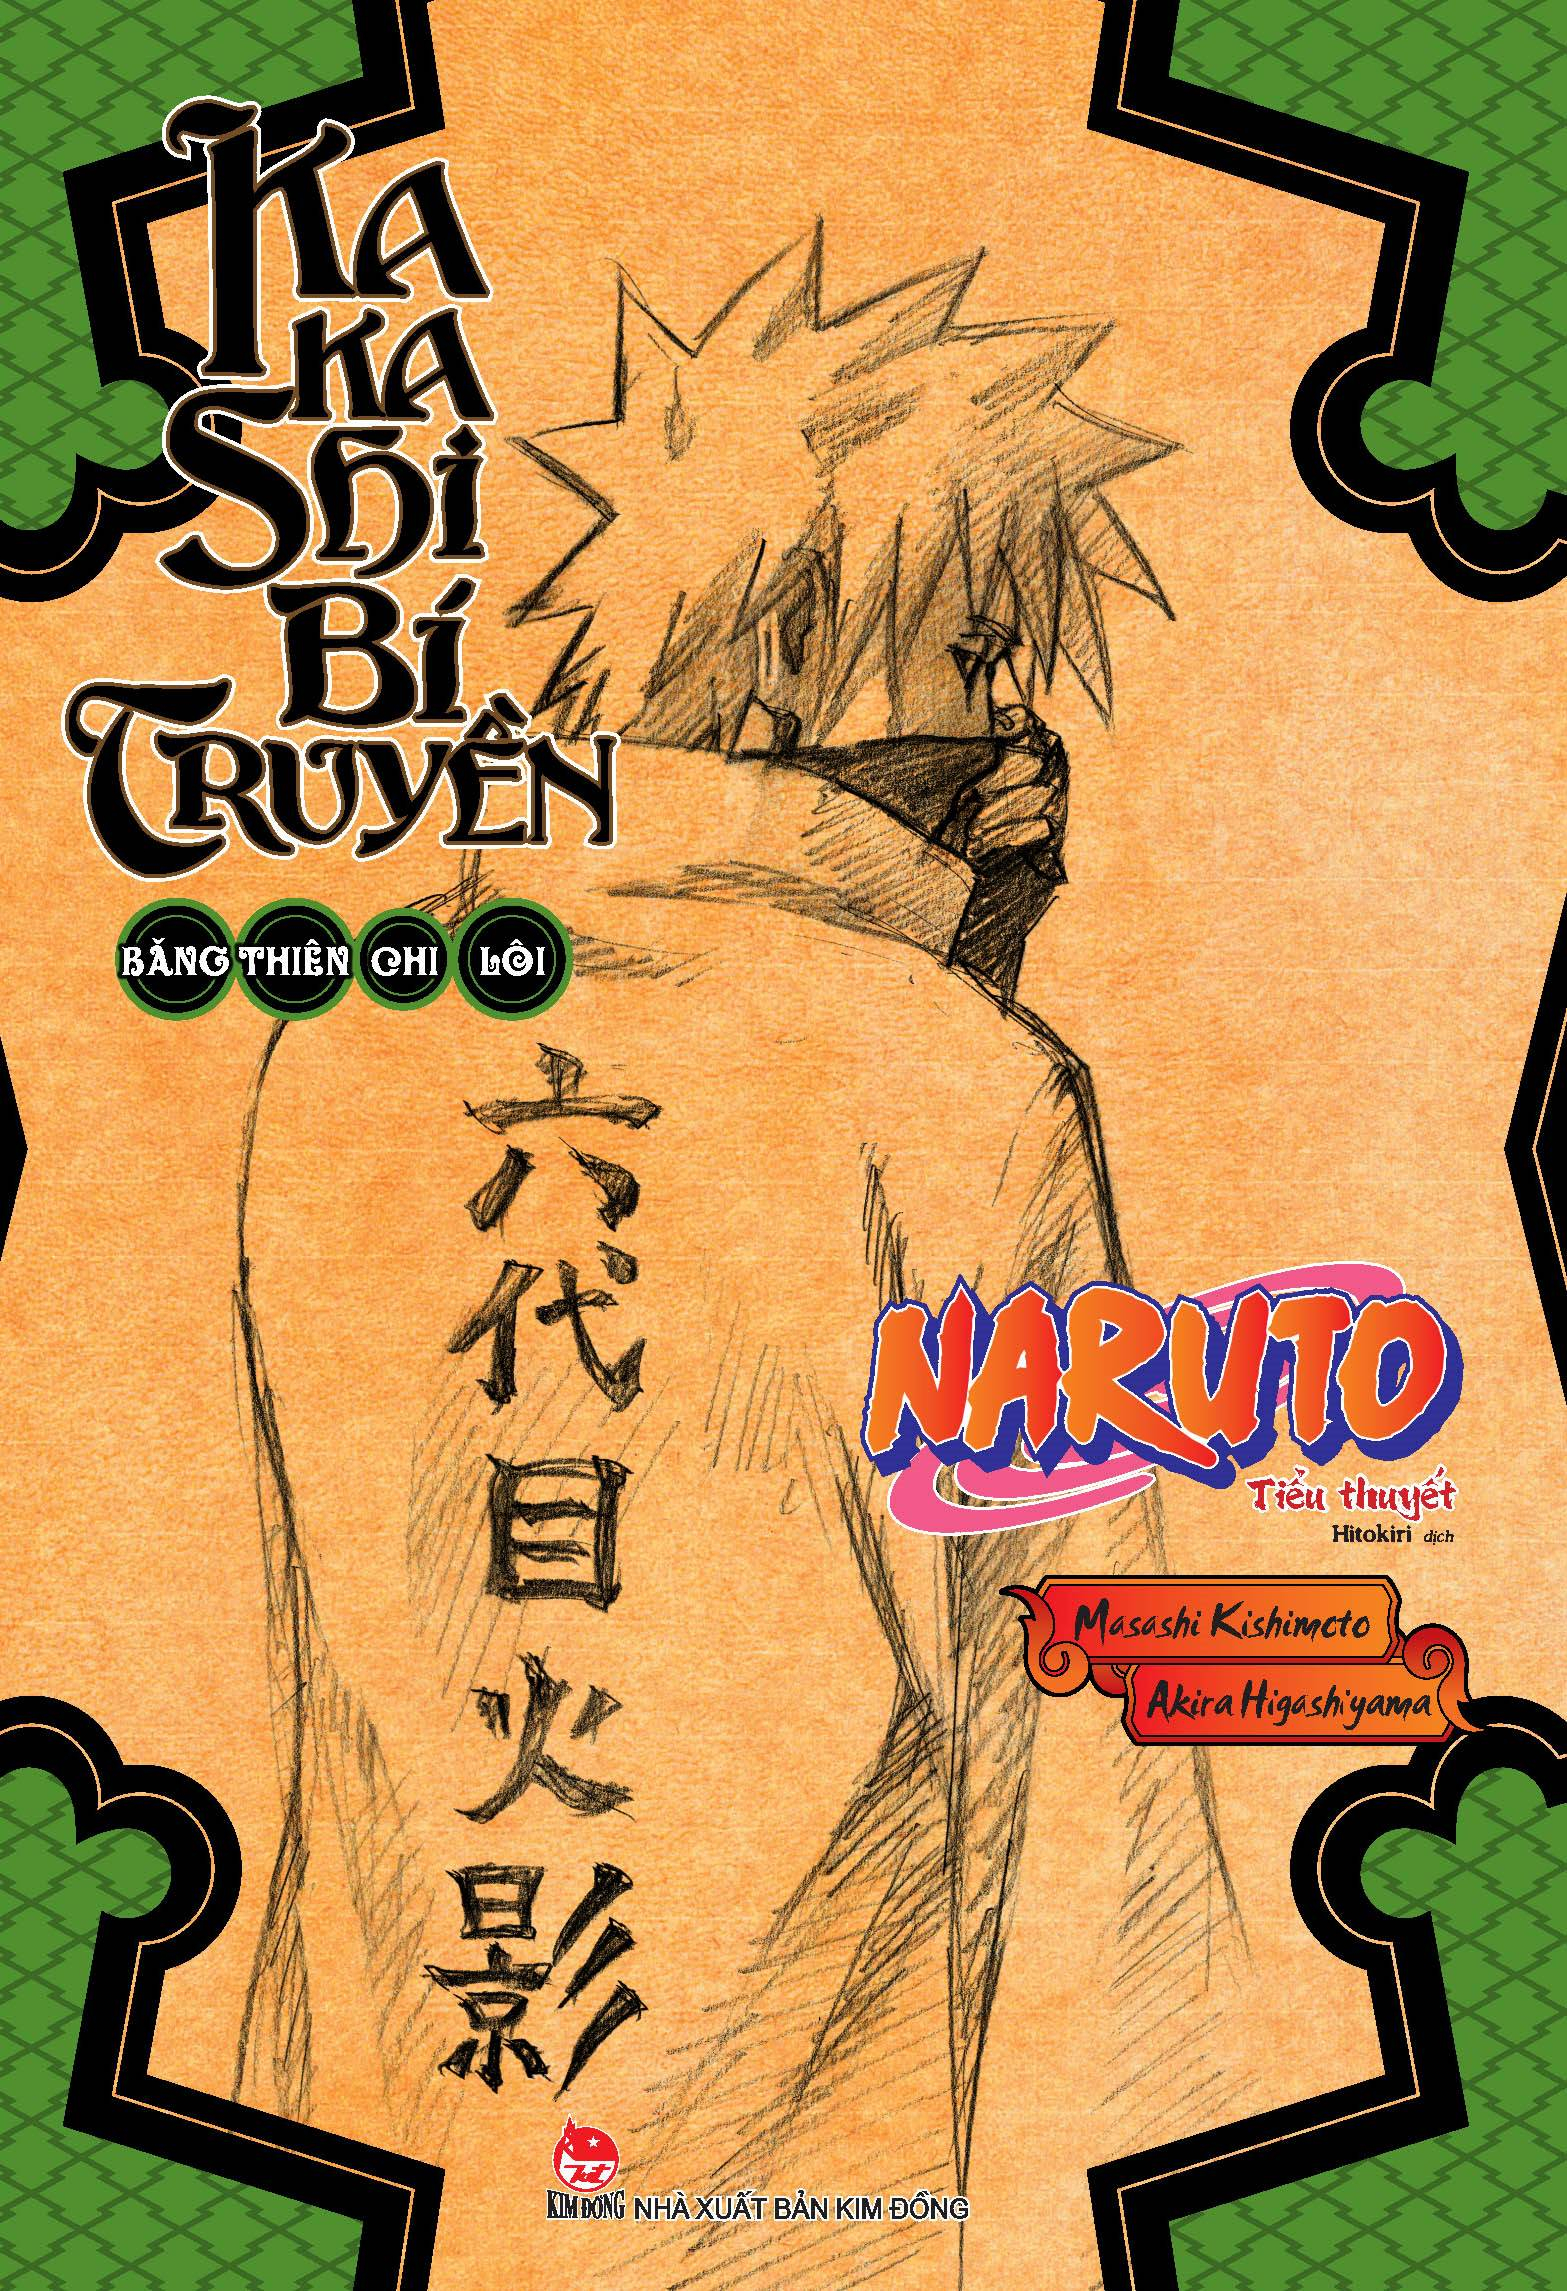 Tiểu Thuyết Naruto - Kakashi Bí Truyền: Băng Thiên Chi Lôi PDF